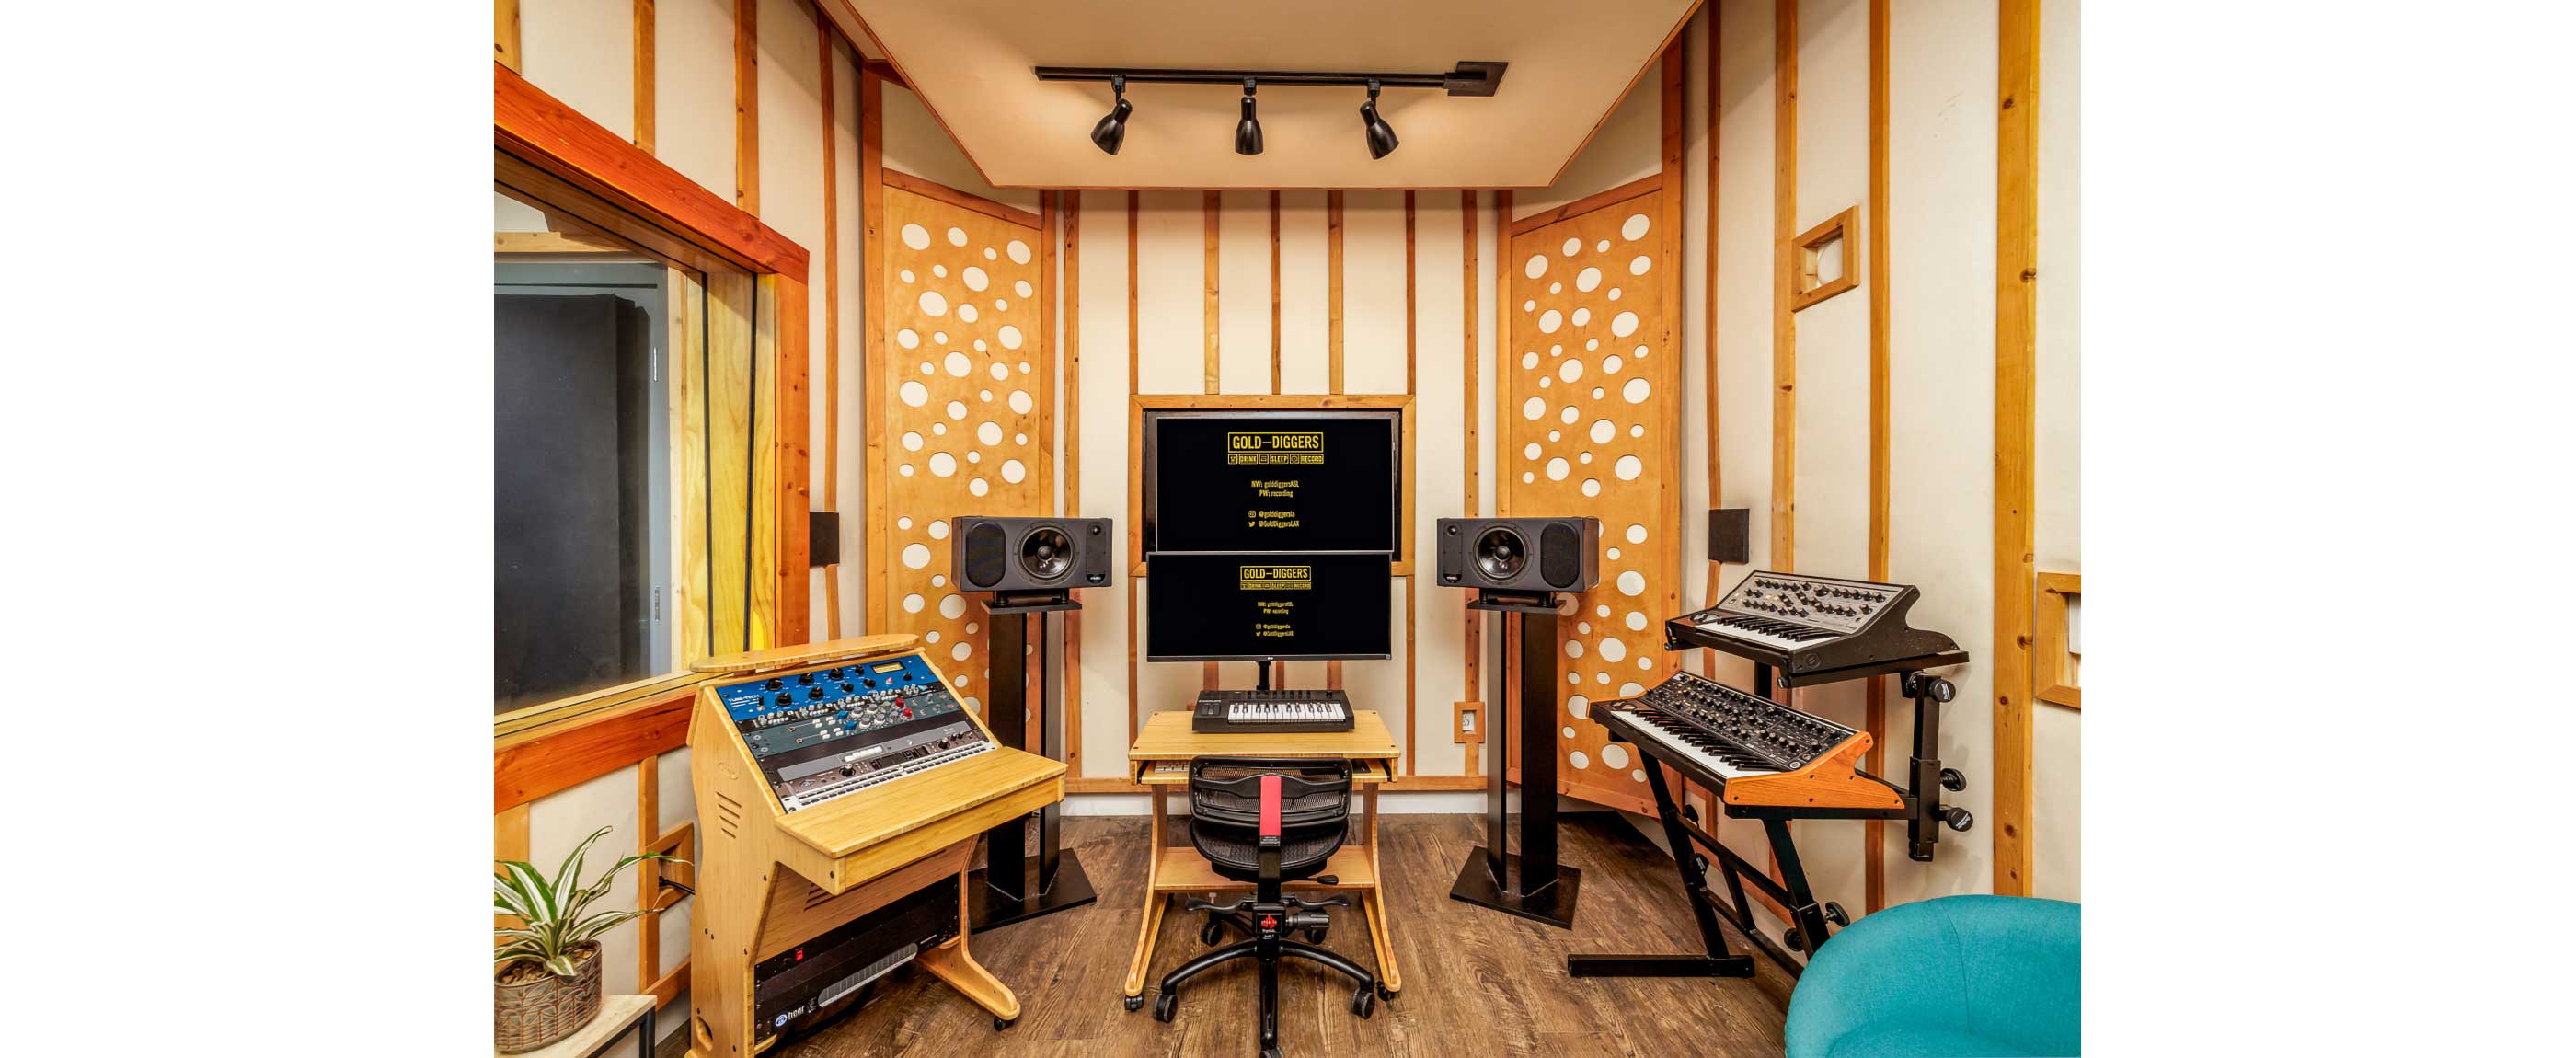 Studio 9 – Gold—Diggers